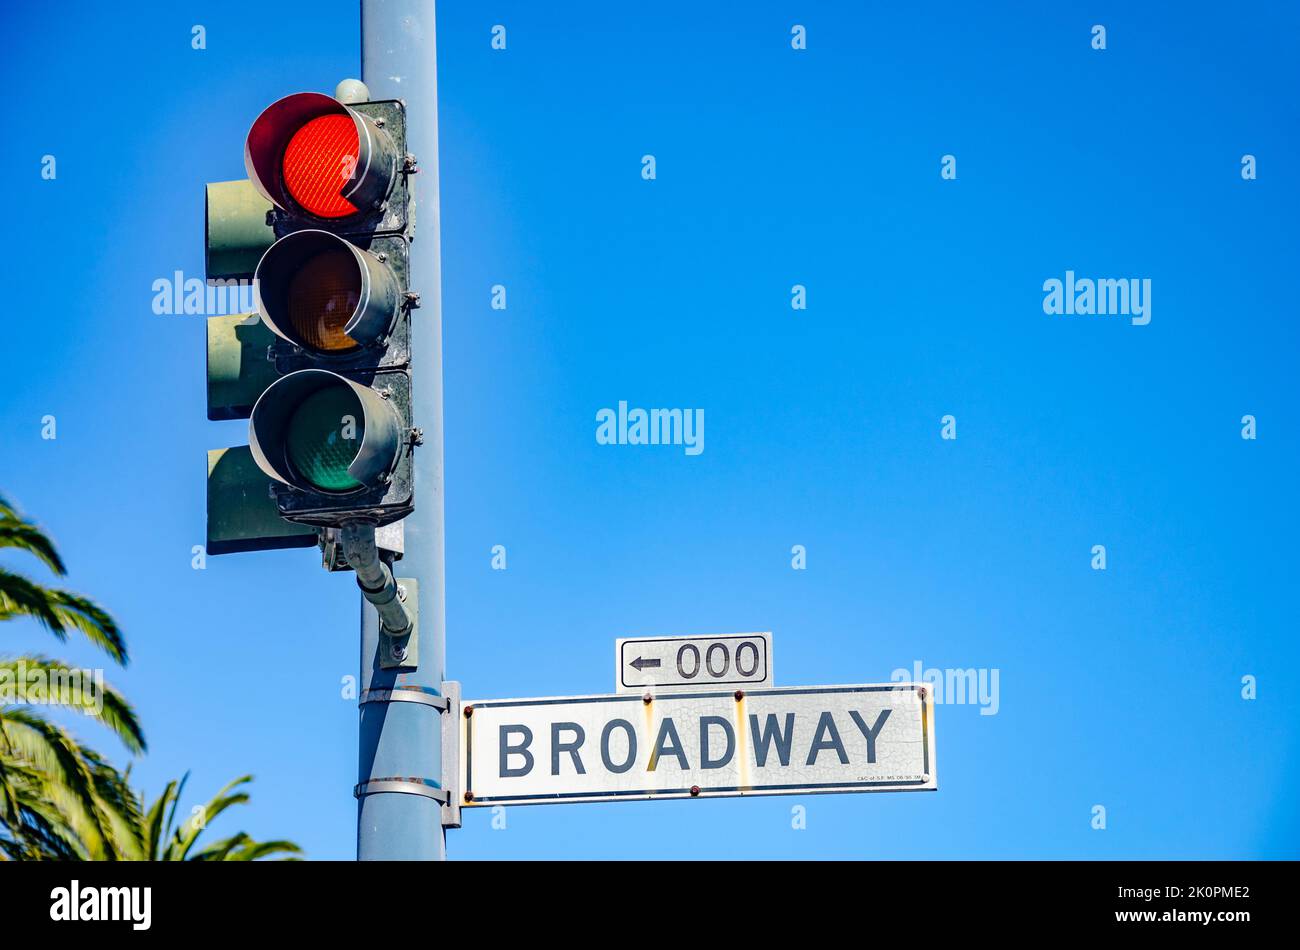 Un feu rouge et un panneau de rue pour 'Broadway' contre un ciel bleu clair d'été à San Francisco, Californie Banque D'Images